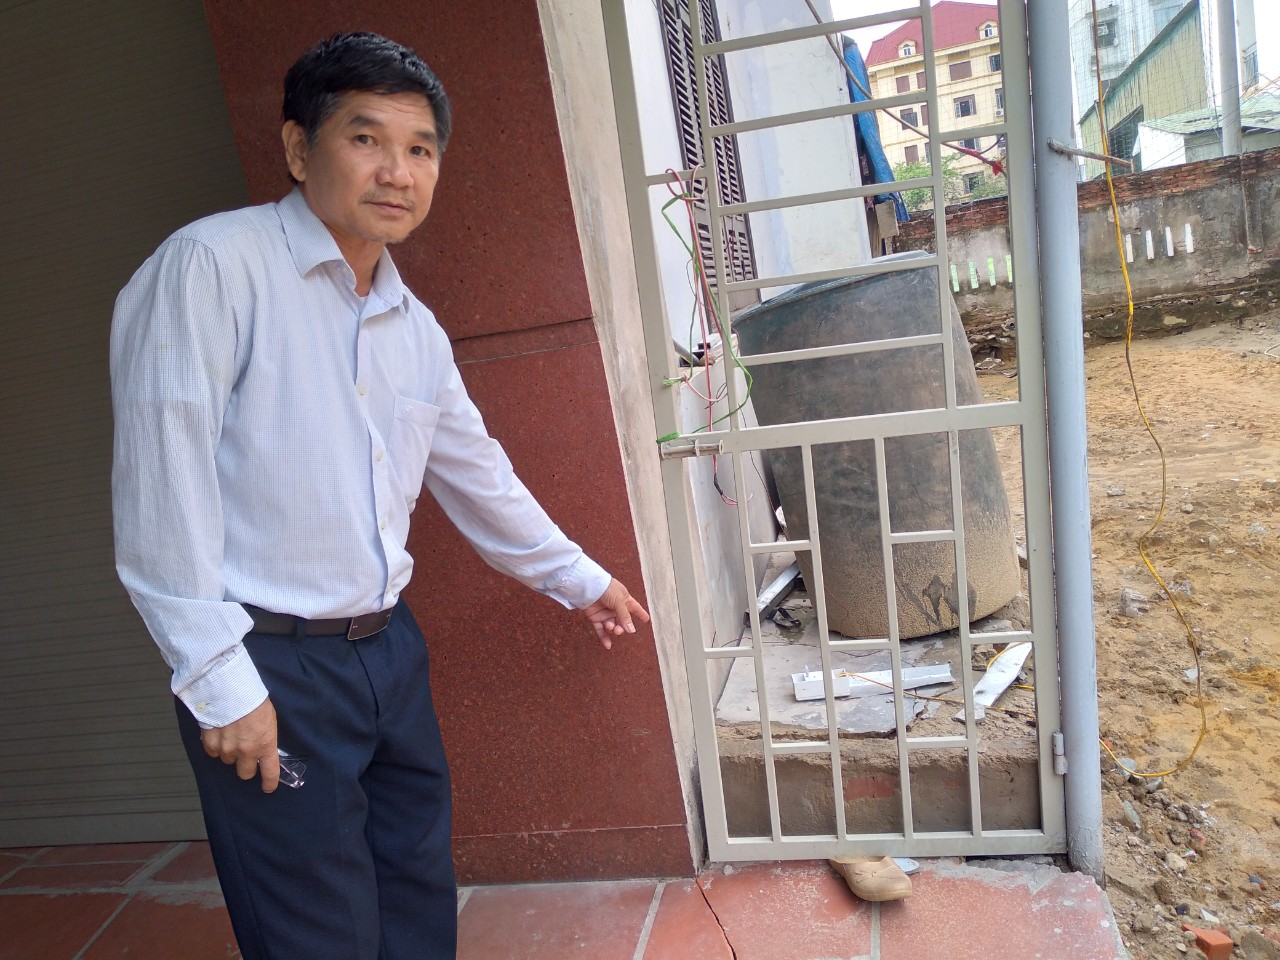 Tranh chấp đất đai ở xã Nghi Phú - Thành phố Vinh: Có dấu hiệu của hành vi hủy hoại tài sản công dân.